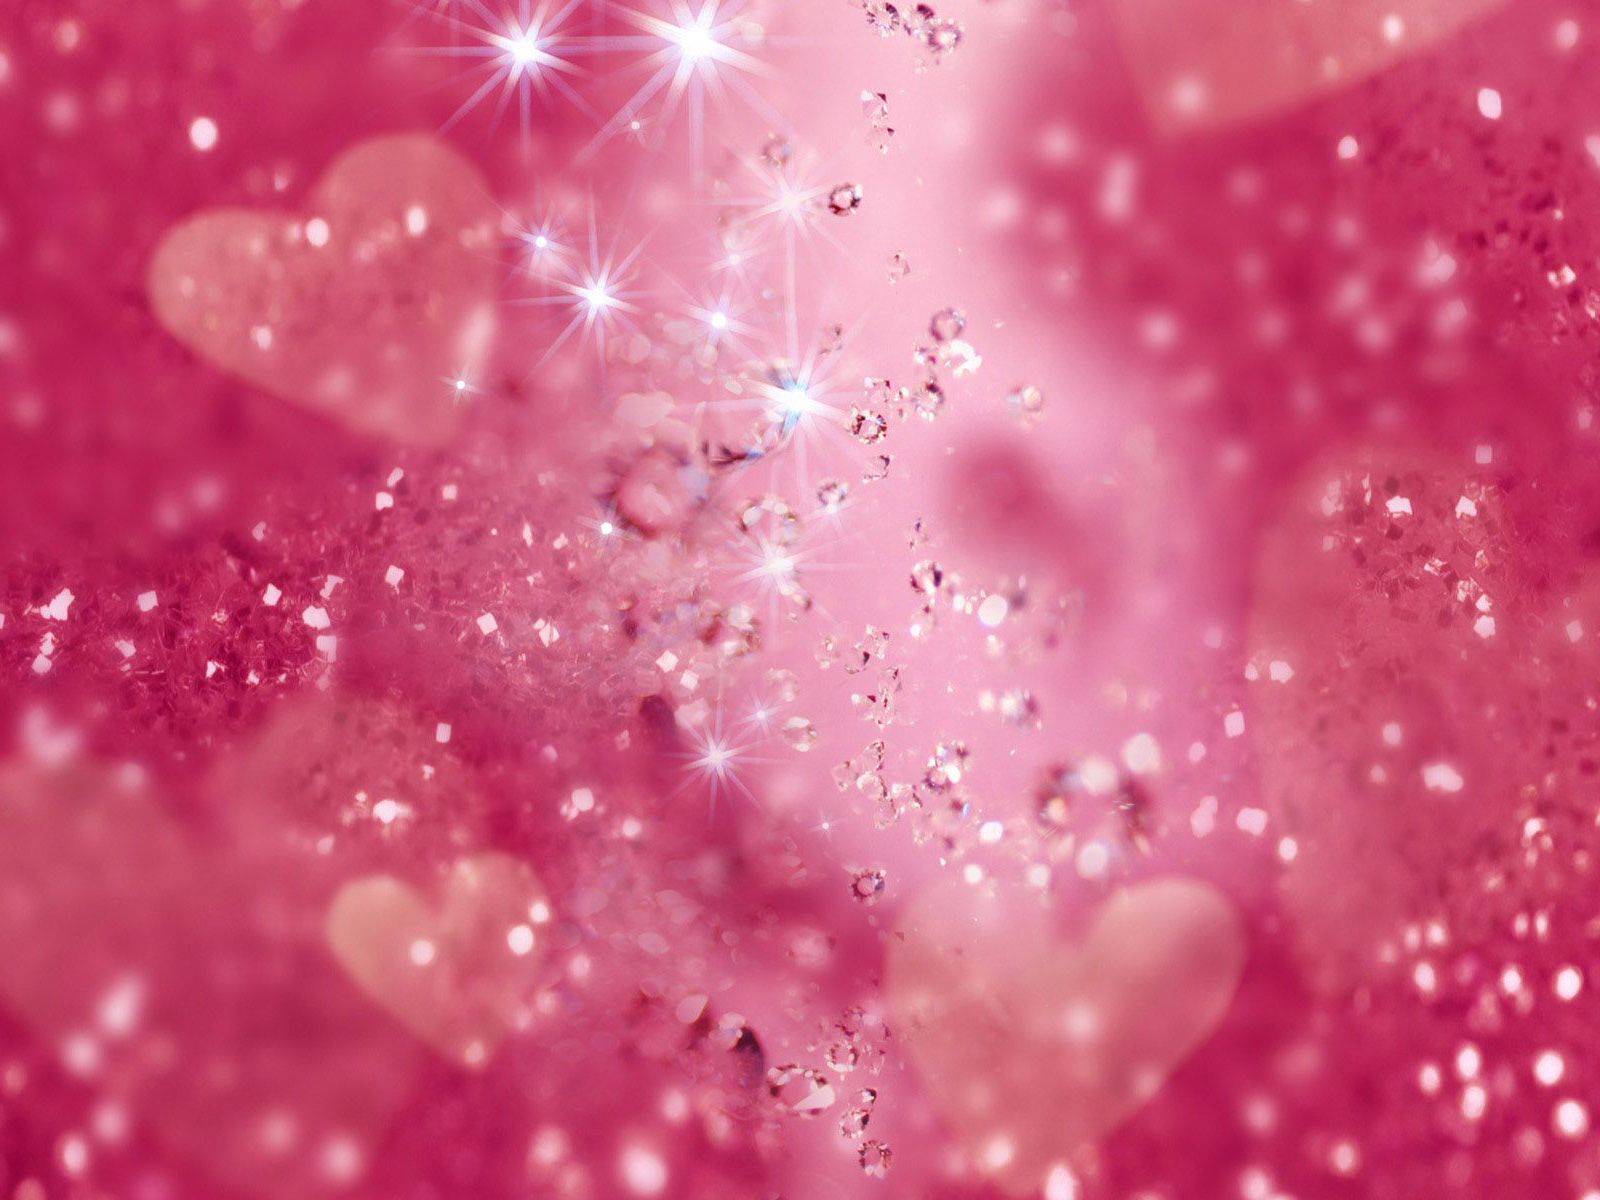 Pink 4k Wallpaper Images - Free Download on Freepik